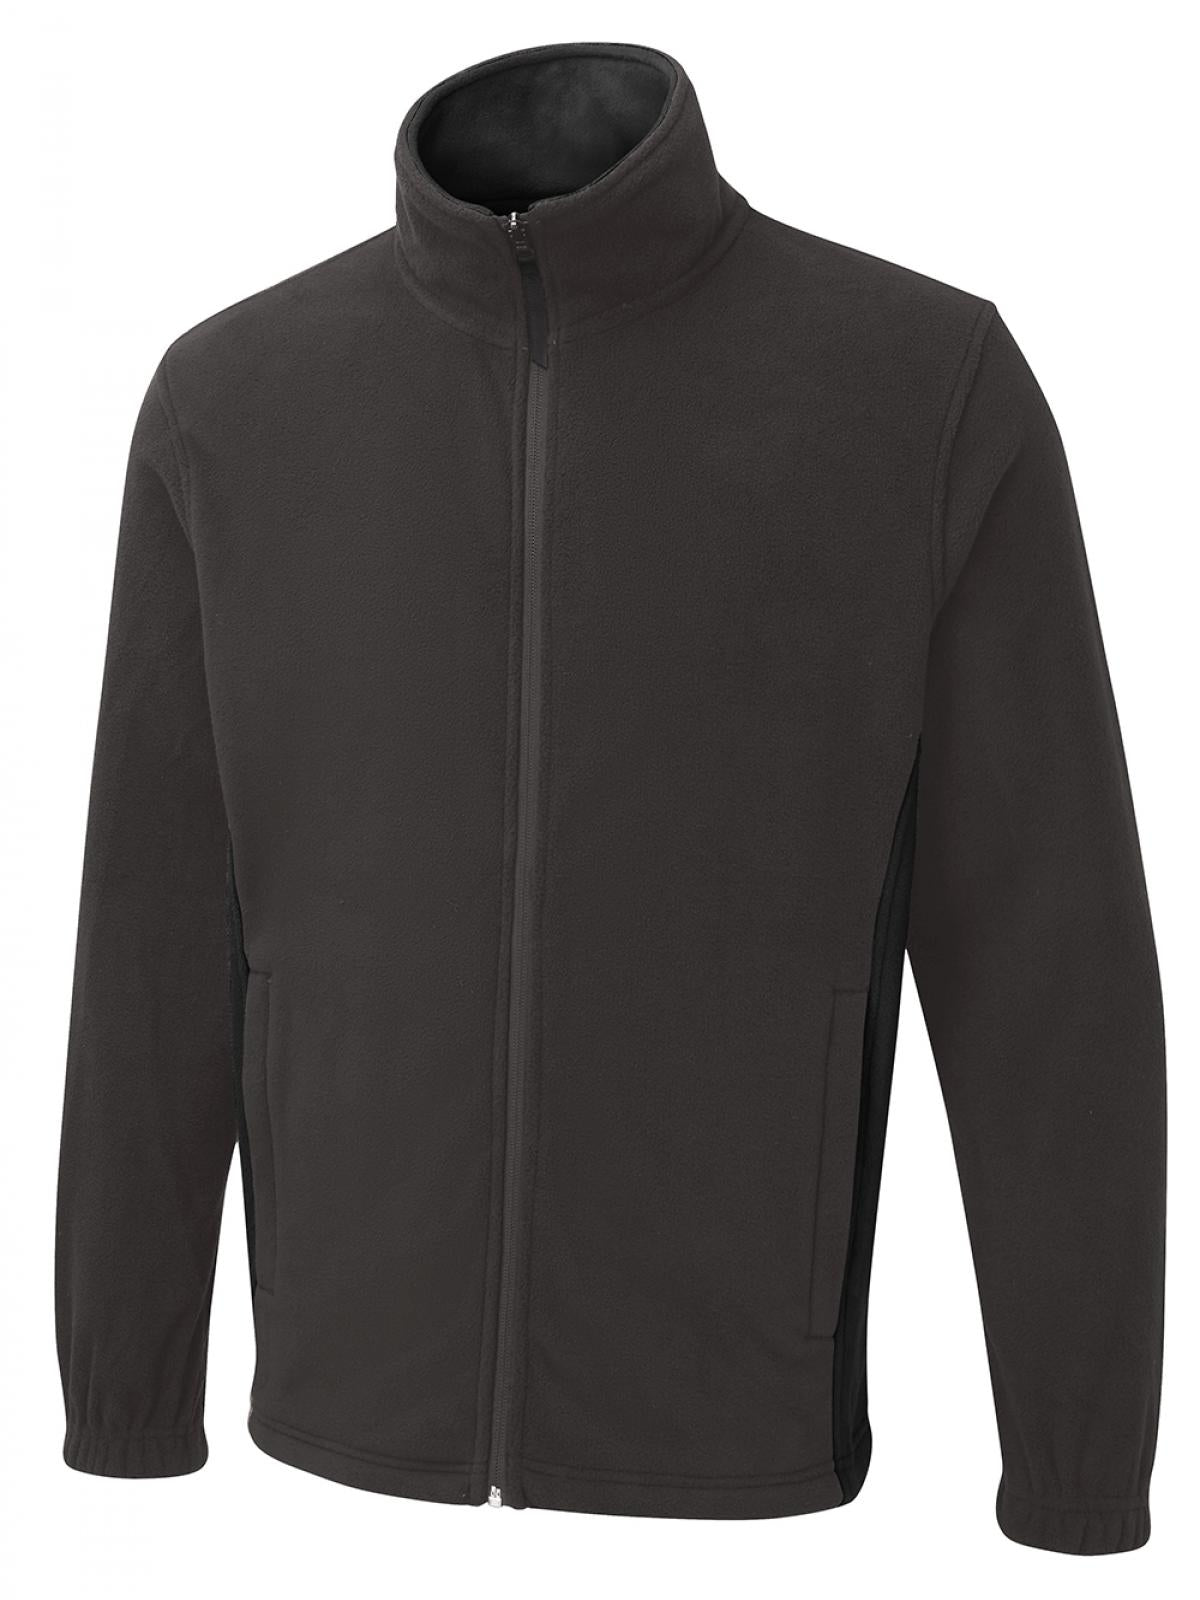 Uneek Two Tone Full Zip Fleece Jacket UC617 - Charcoal/Black